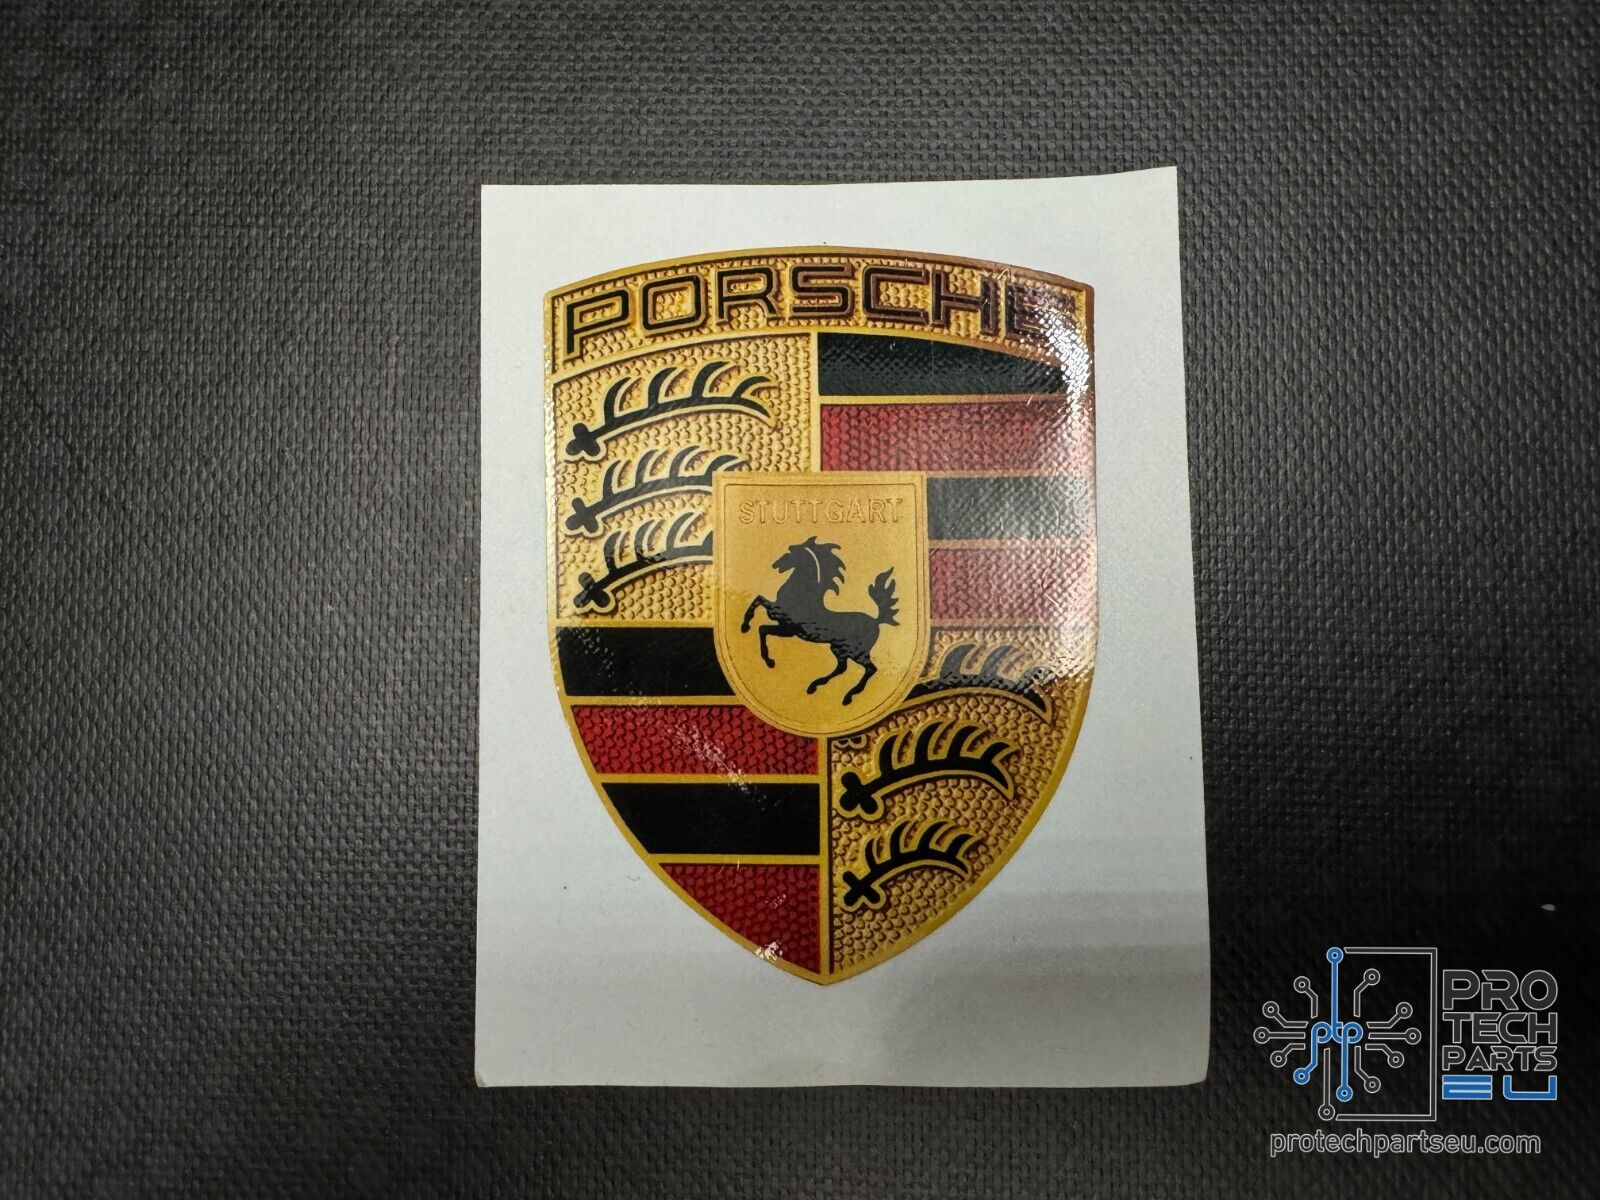 Porsche 911 996 lid crest emblem decal original new GT2 99655921190